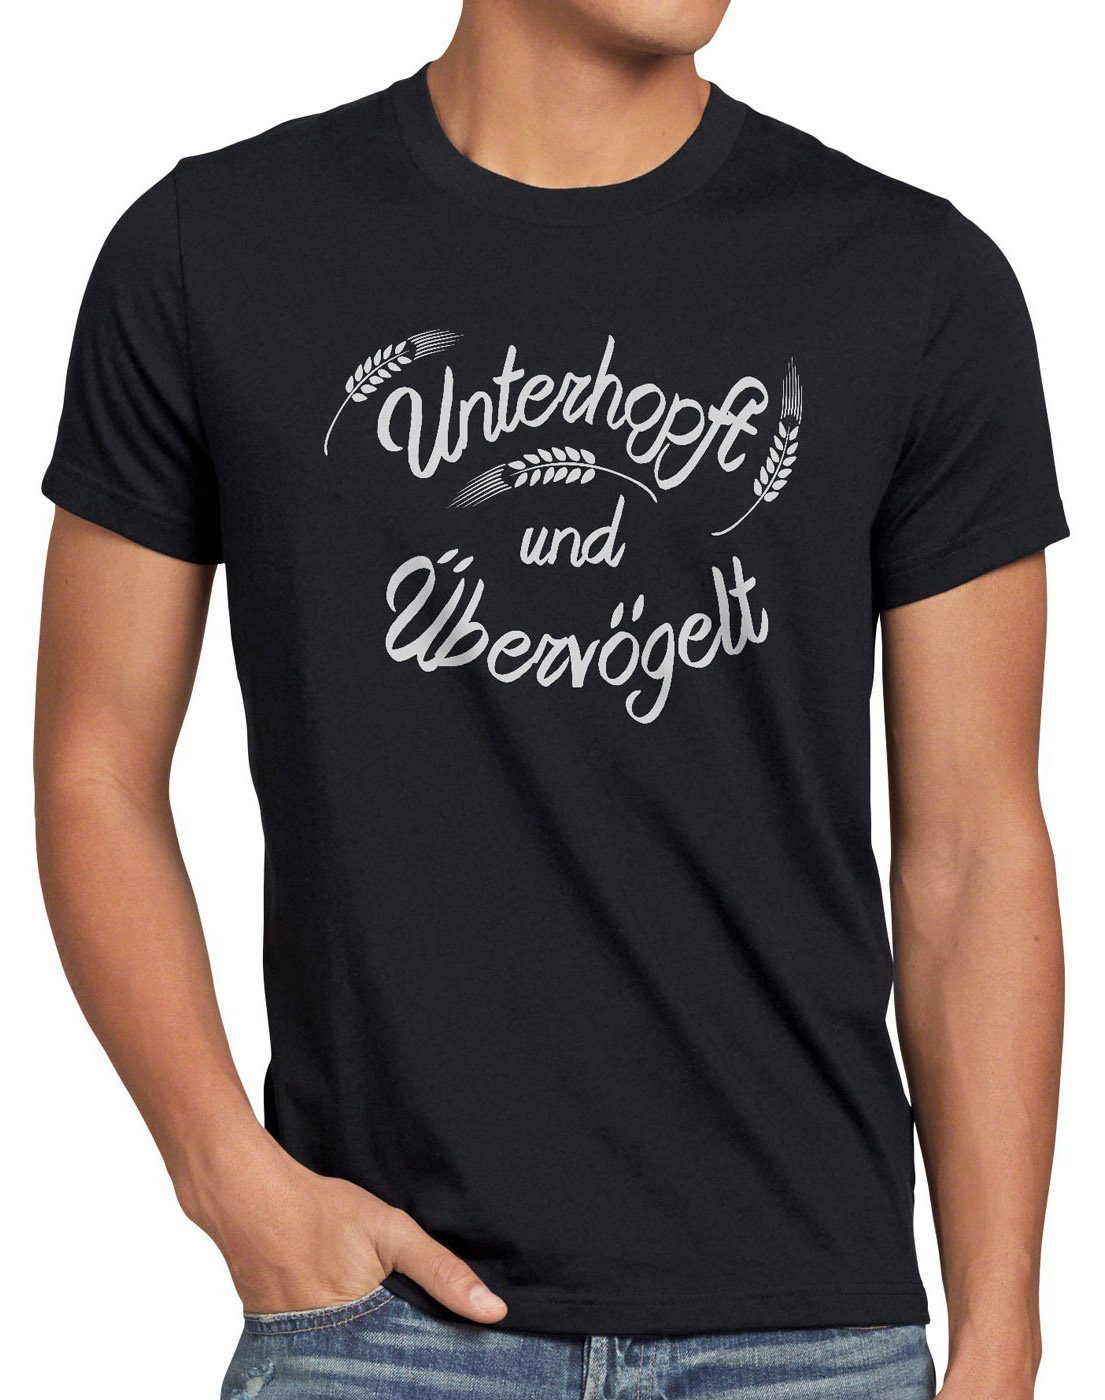 style3 Print-Shirt Herren Unterhopft Malz Fun Funshirt Spruch T-Shirt schwarz Übervögelt Shirt Kult Bier